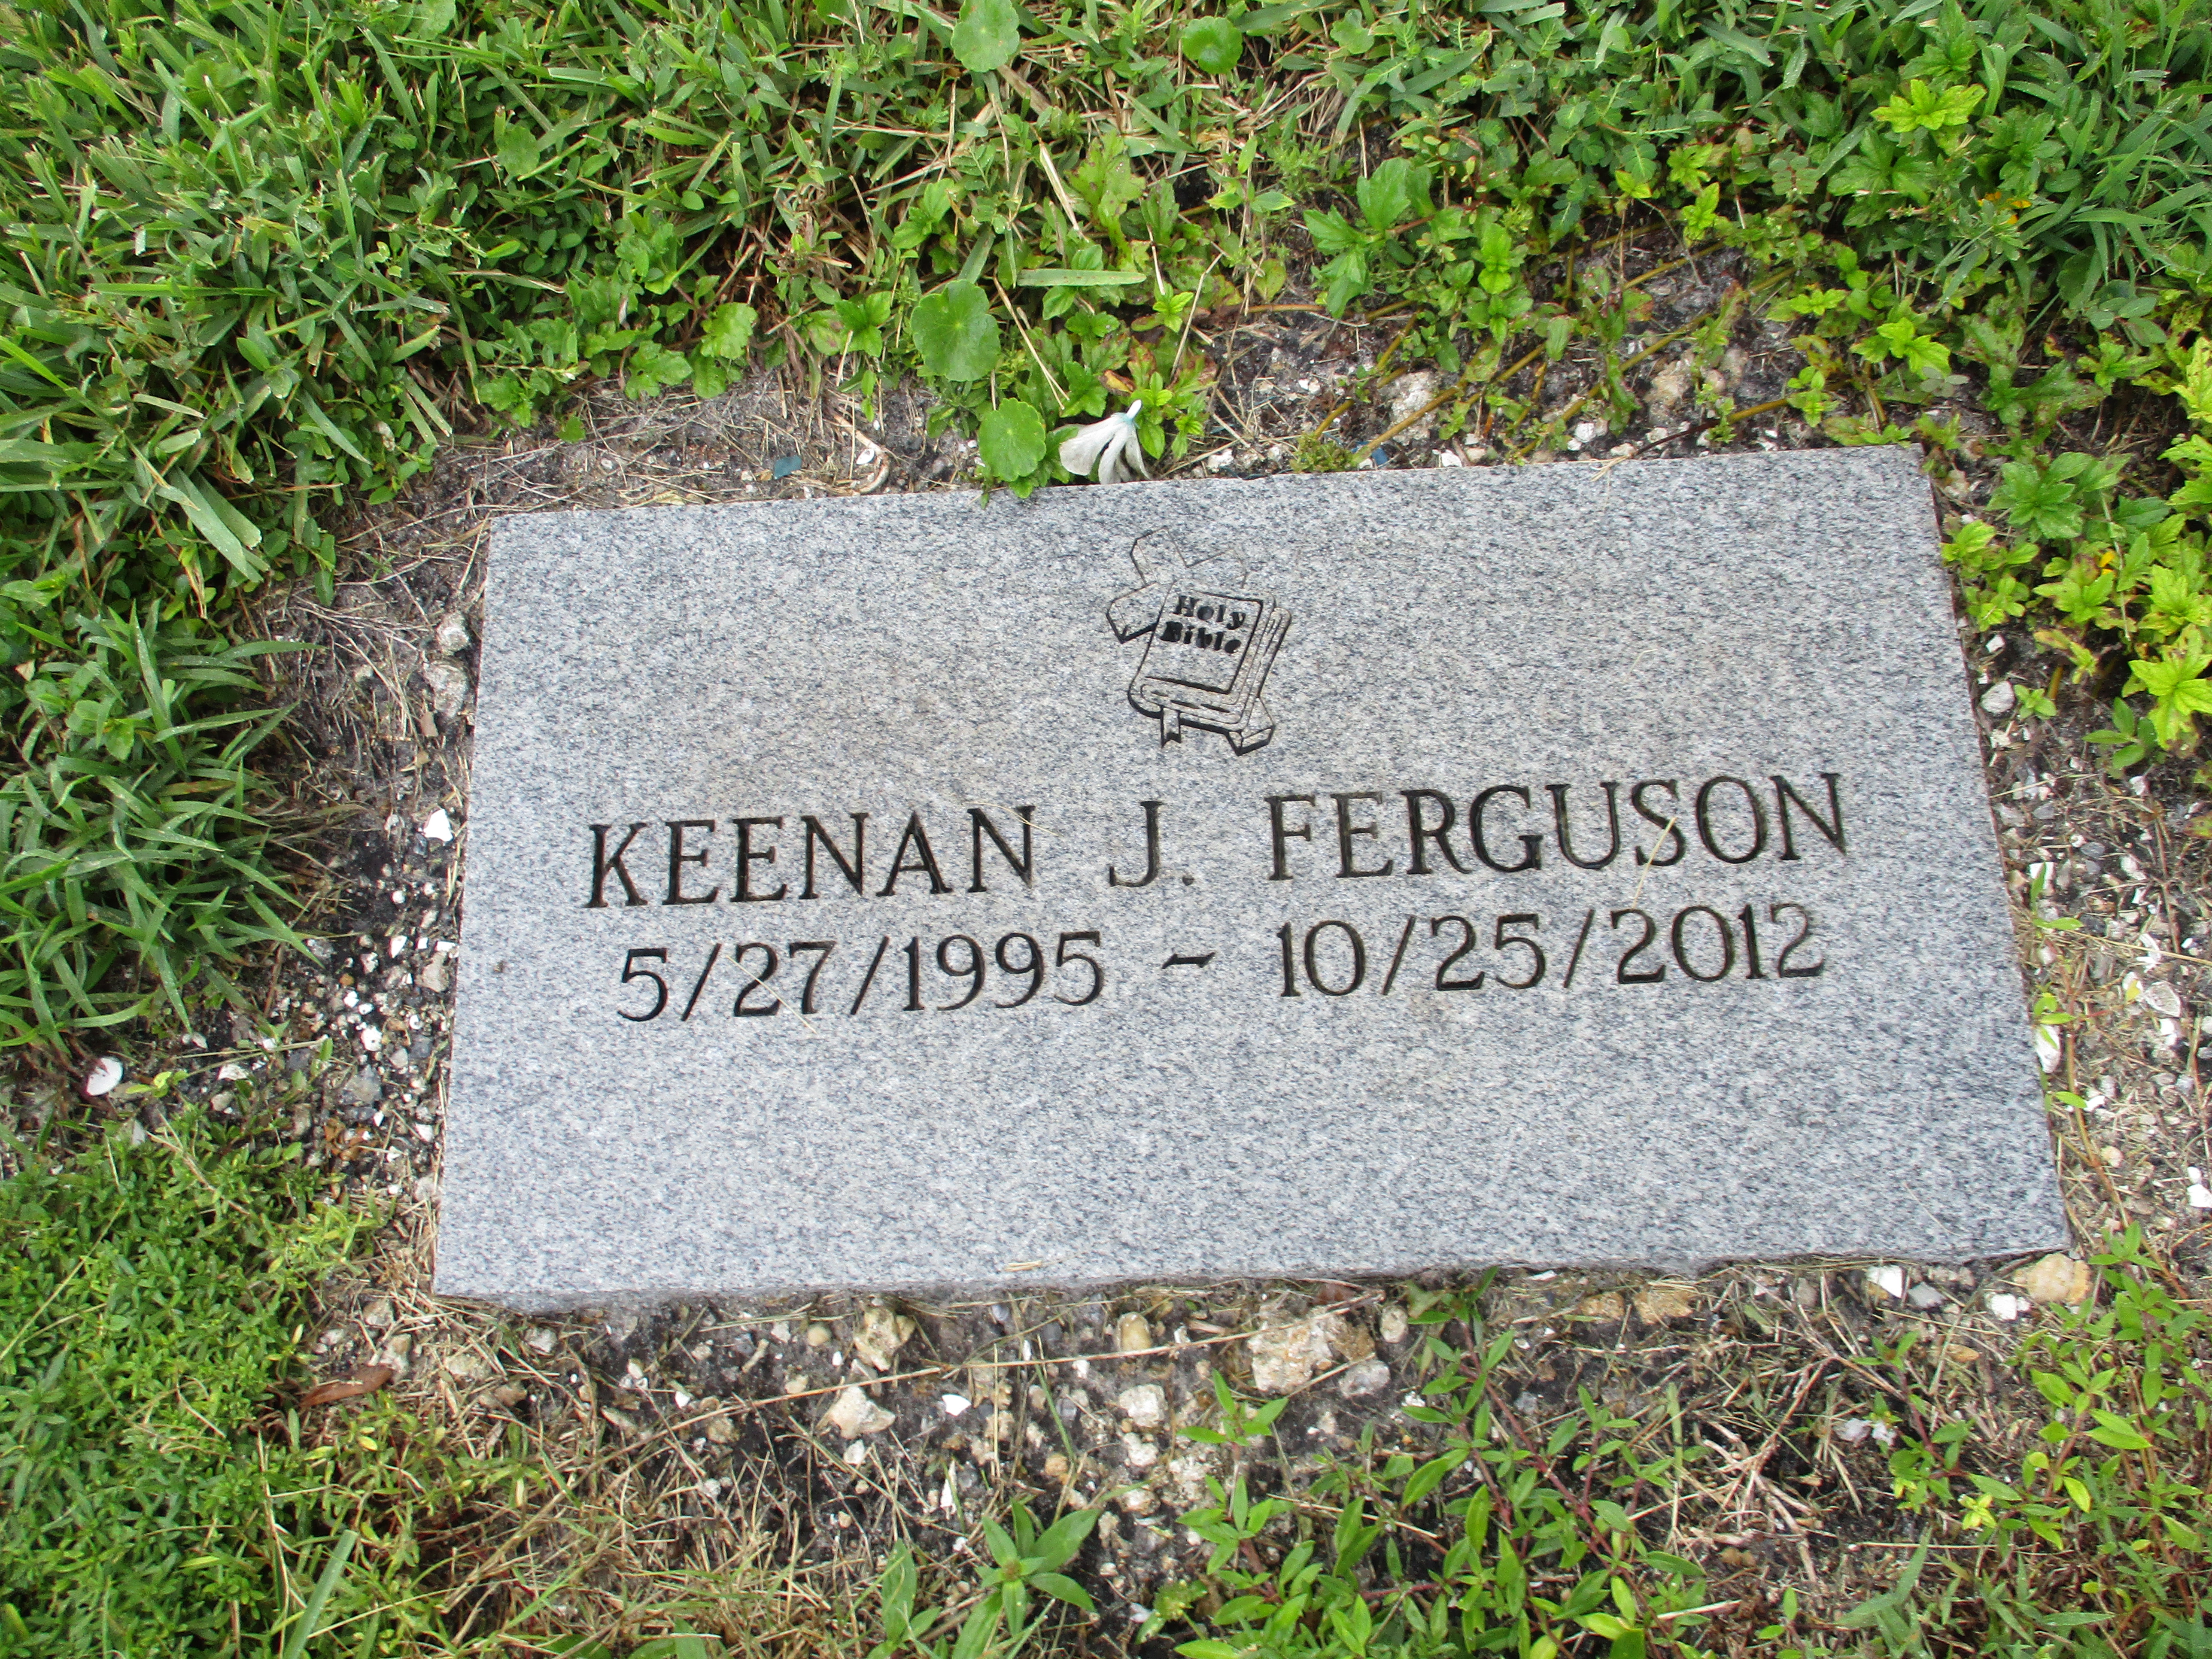 Keenan J Ferguson